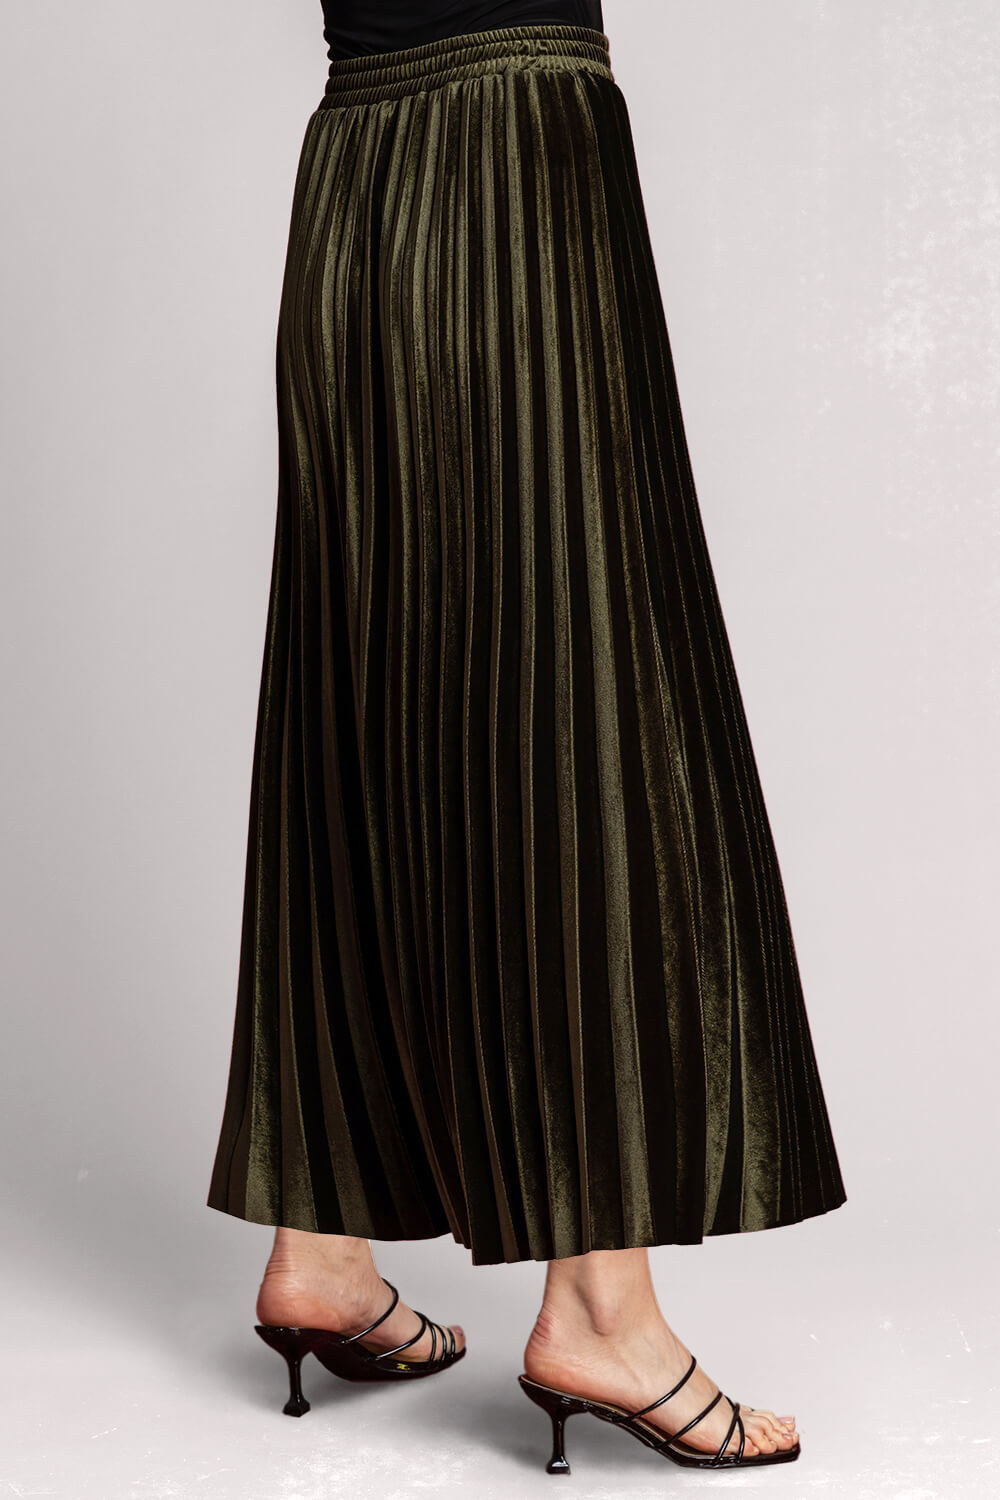 Olive Velour Pleated Midi Skirt, Image 2 of 5